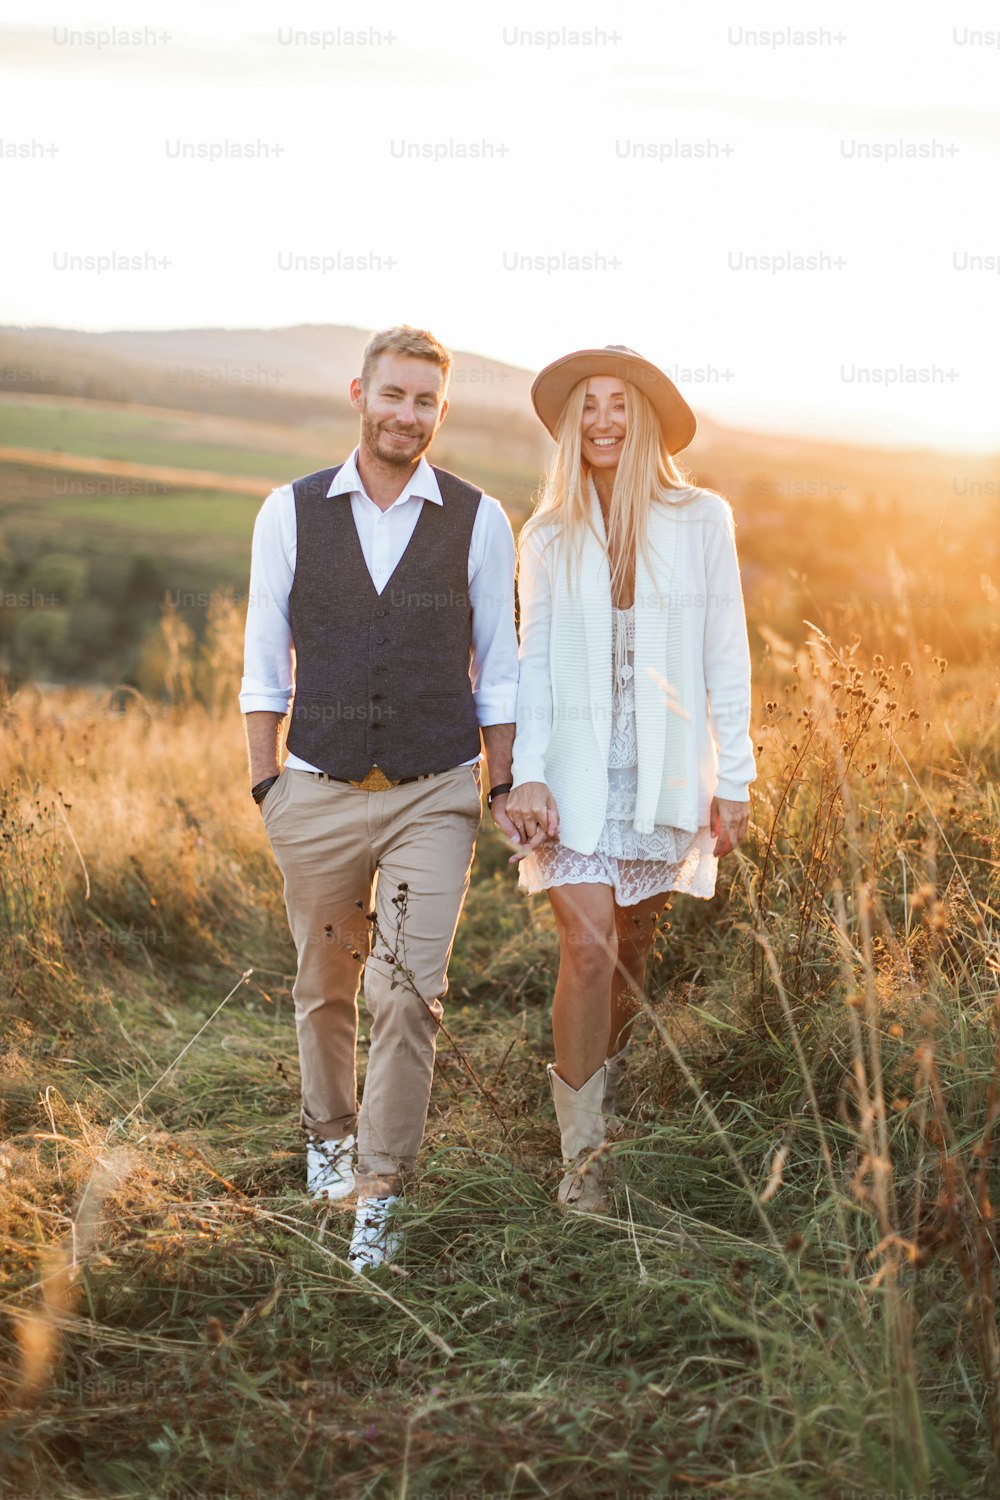 Homem bonito e elegante de camisa, colete e calça e mulher bonita boho no vestido, jaqueta e chapéu andando no campo com fardos de palha, de mãos dadas e sorrindo. Noite de verão, pôr do sol.